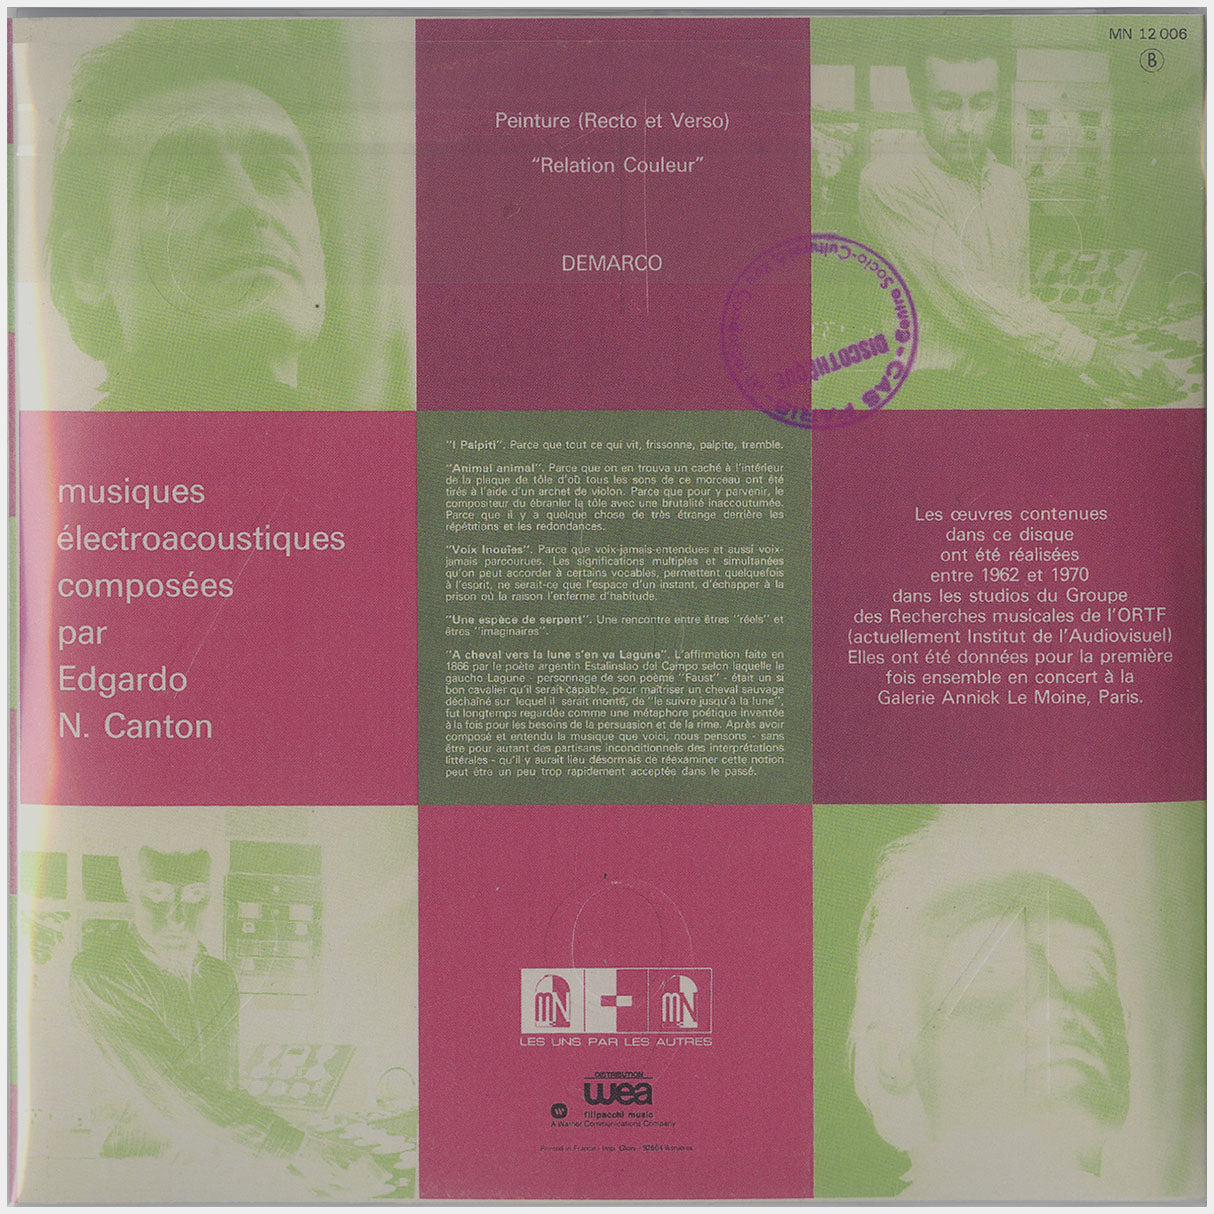 [CP 118 CD] Edgardo N. Canton; Musiques Électroacoustiques, Le Mur